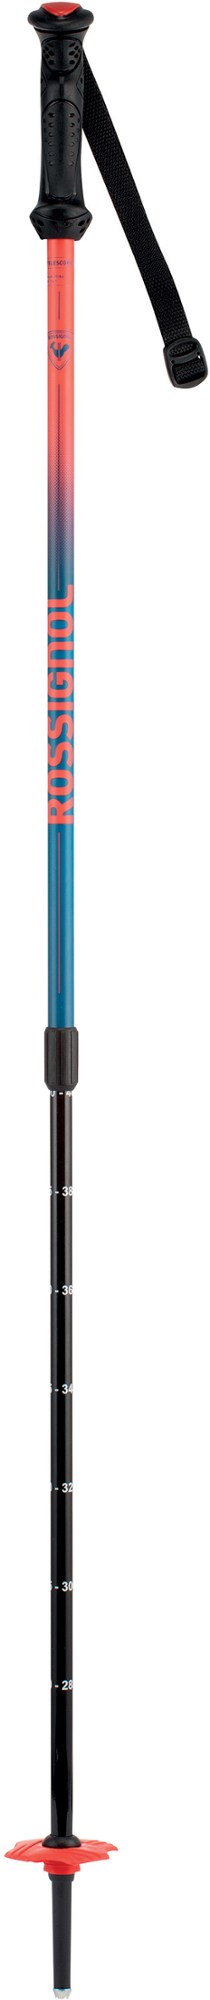 лыжные палки atomic pro jr 105 см red black Телескопические лыжные палки Jr. — детские Rossignol